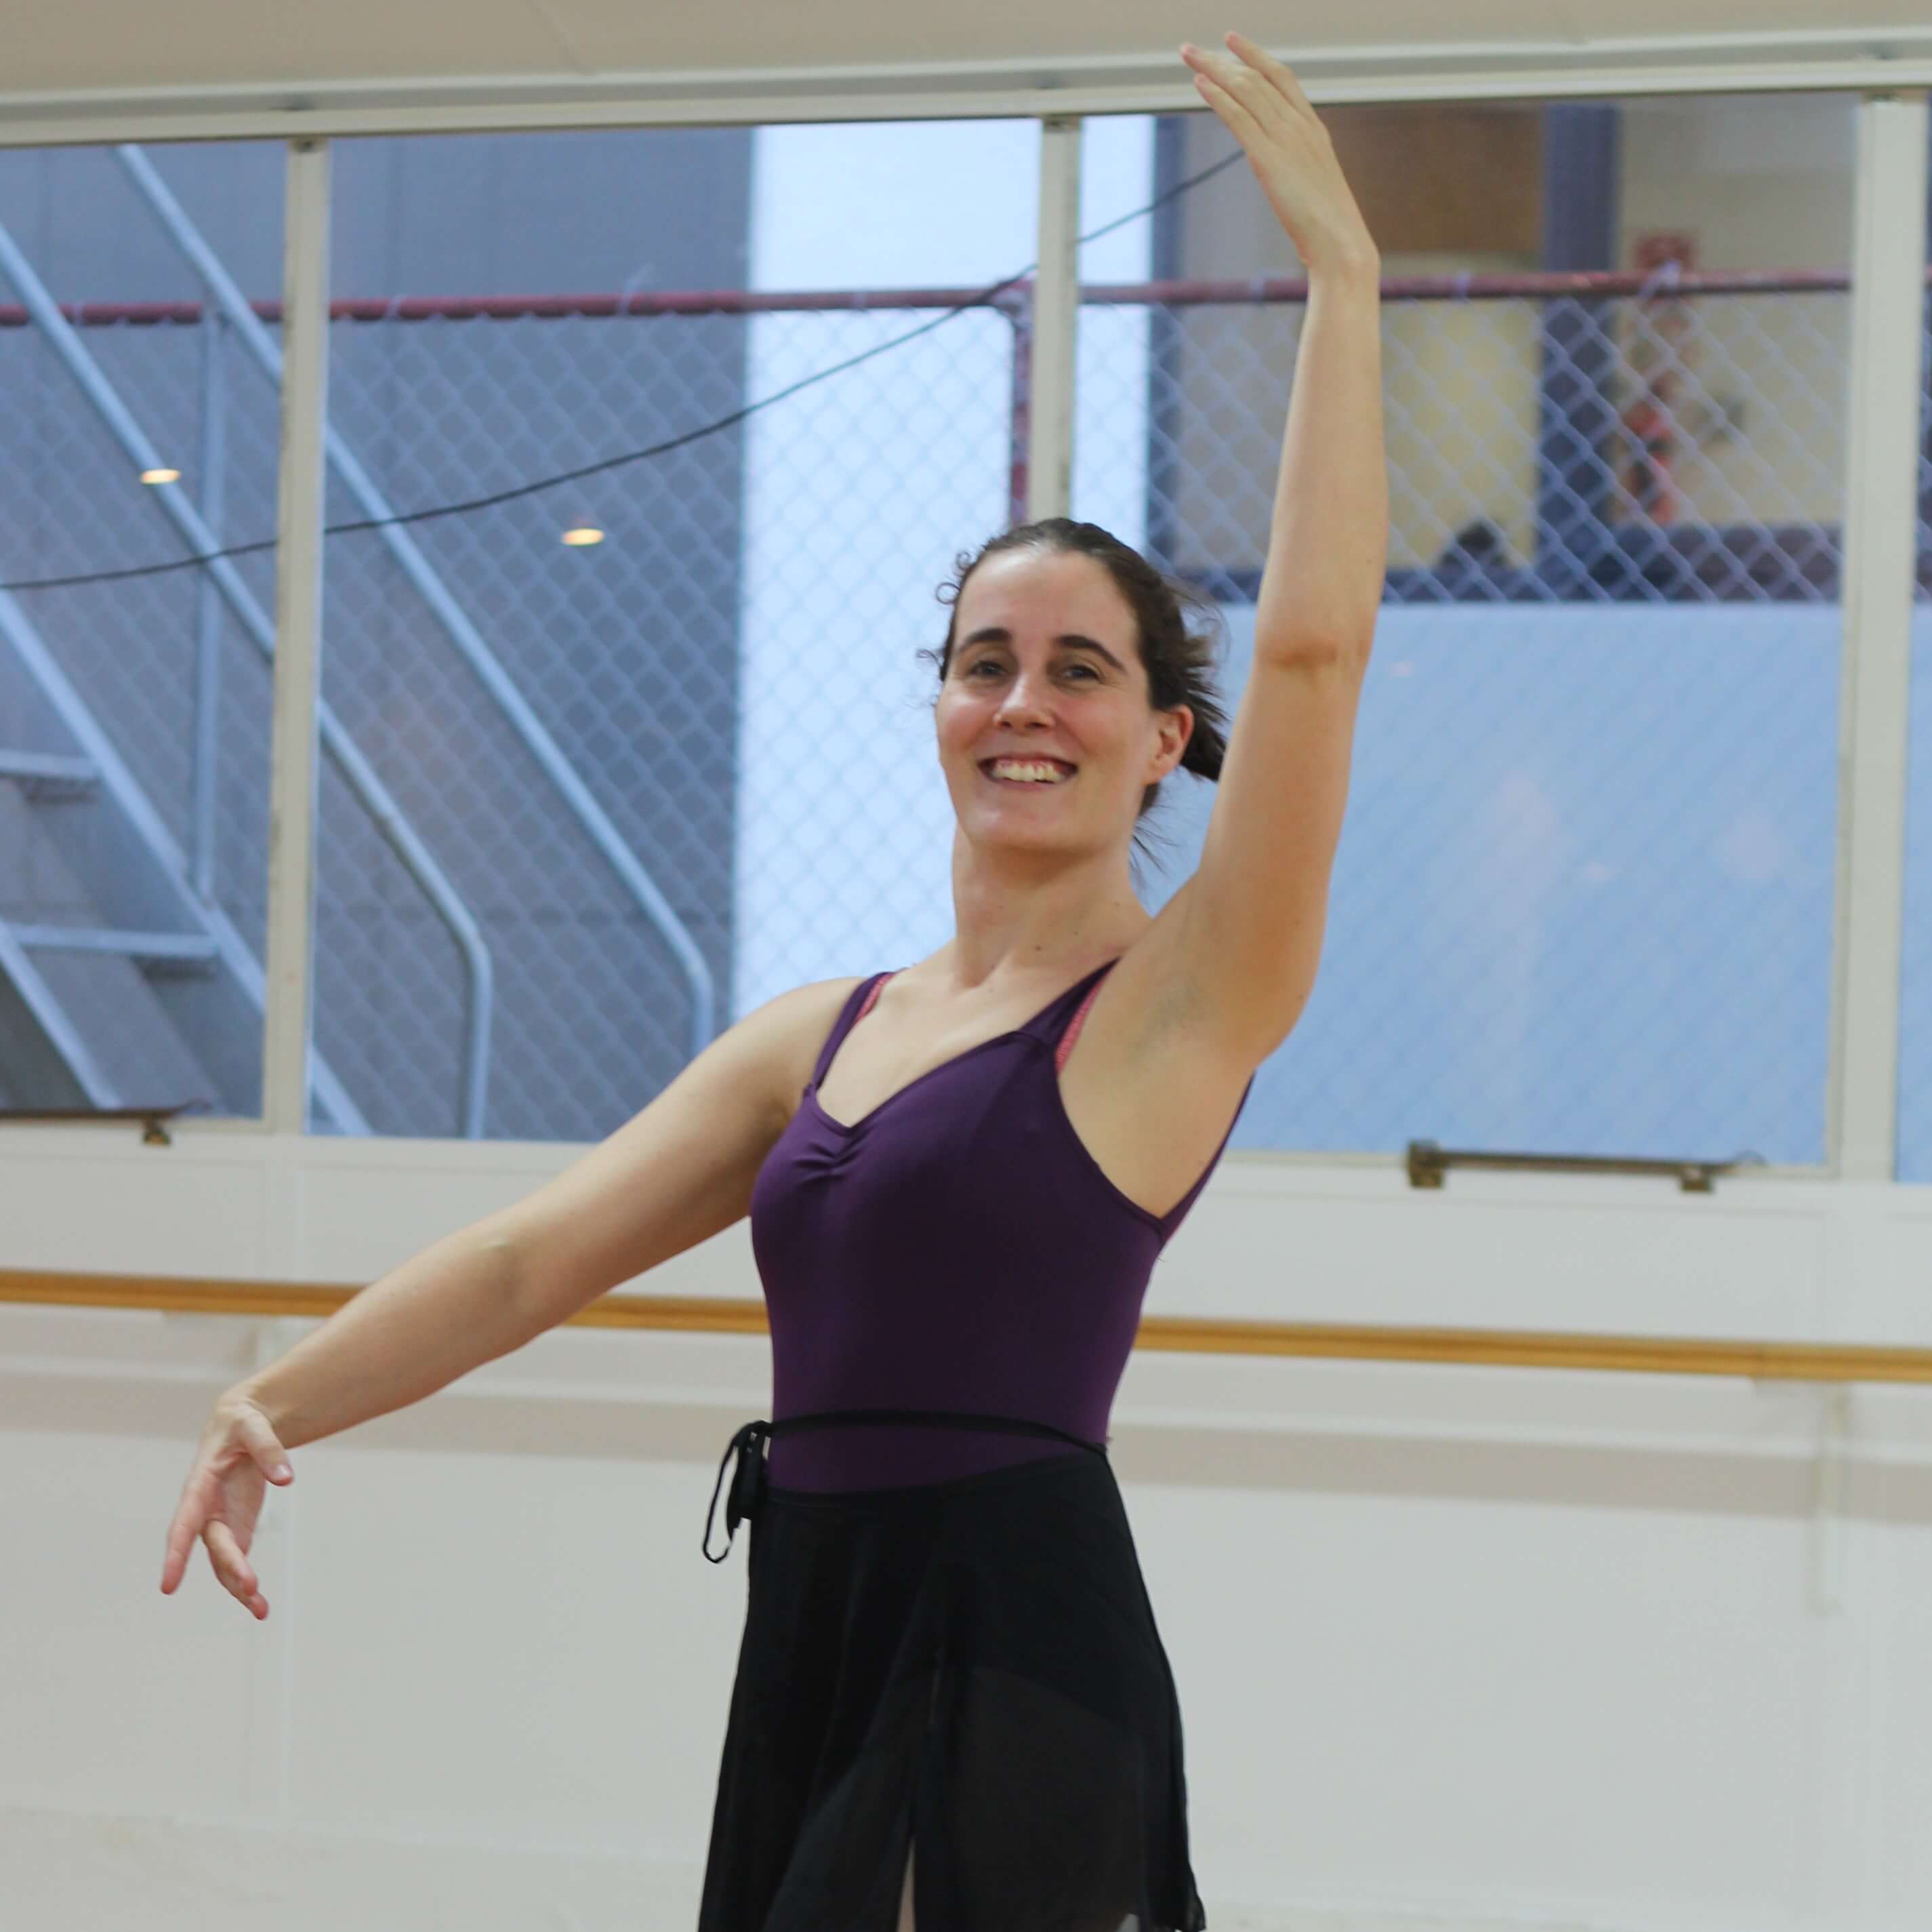 Julie Adult Ballet Teacher the Dance Domain